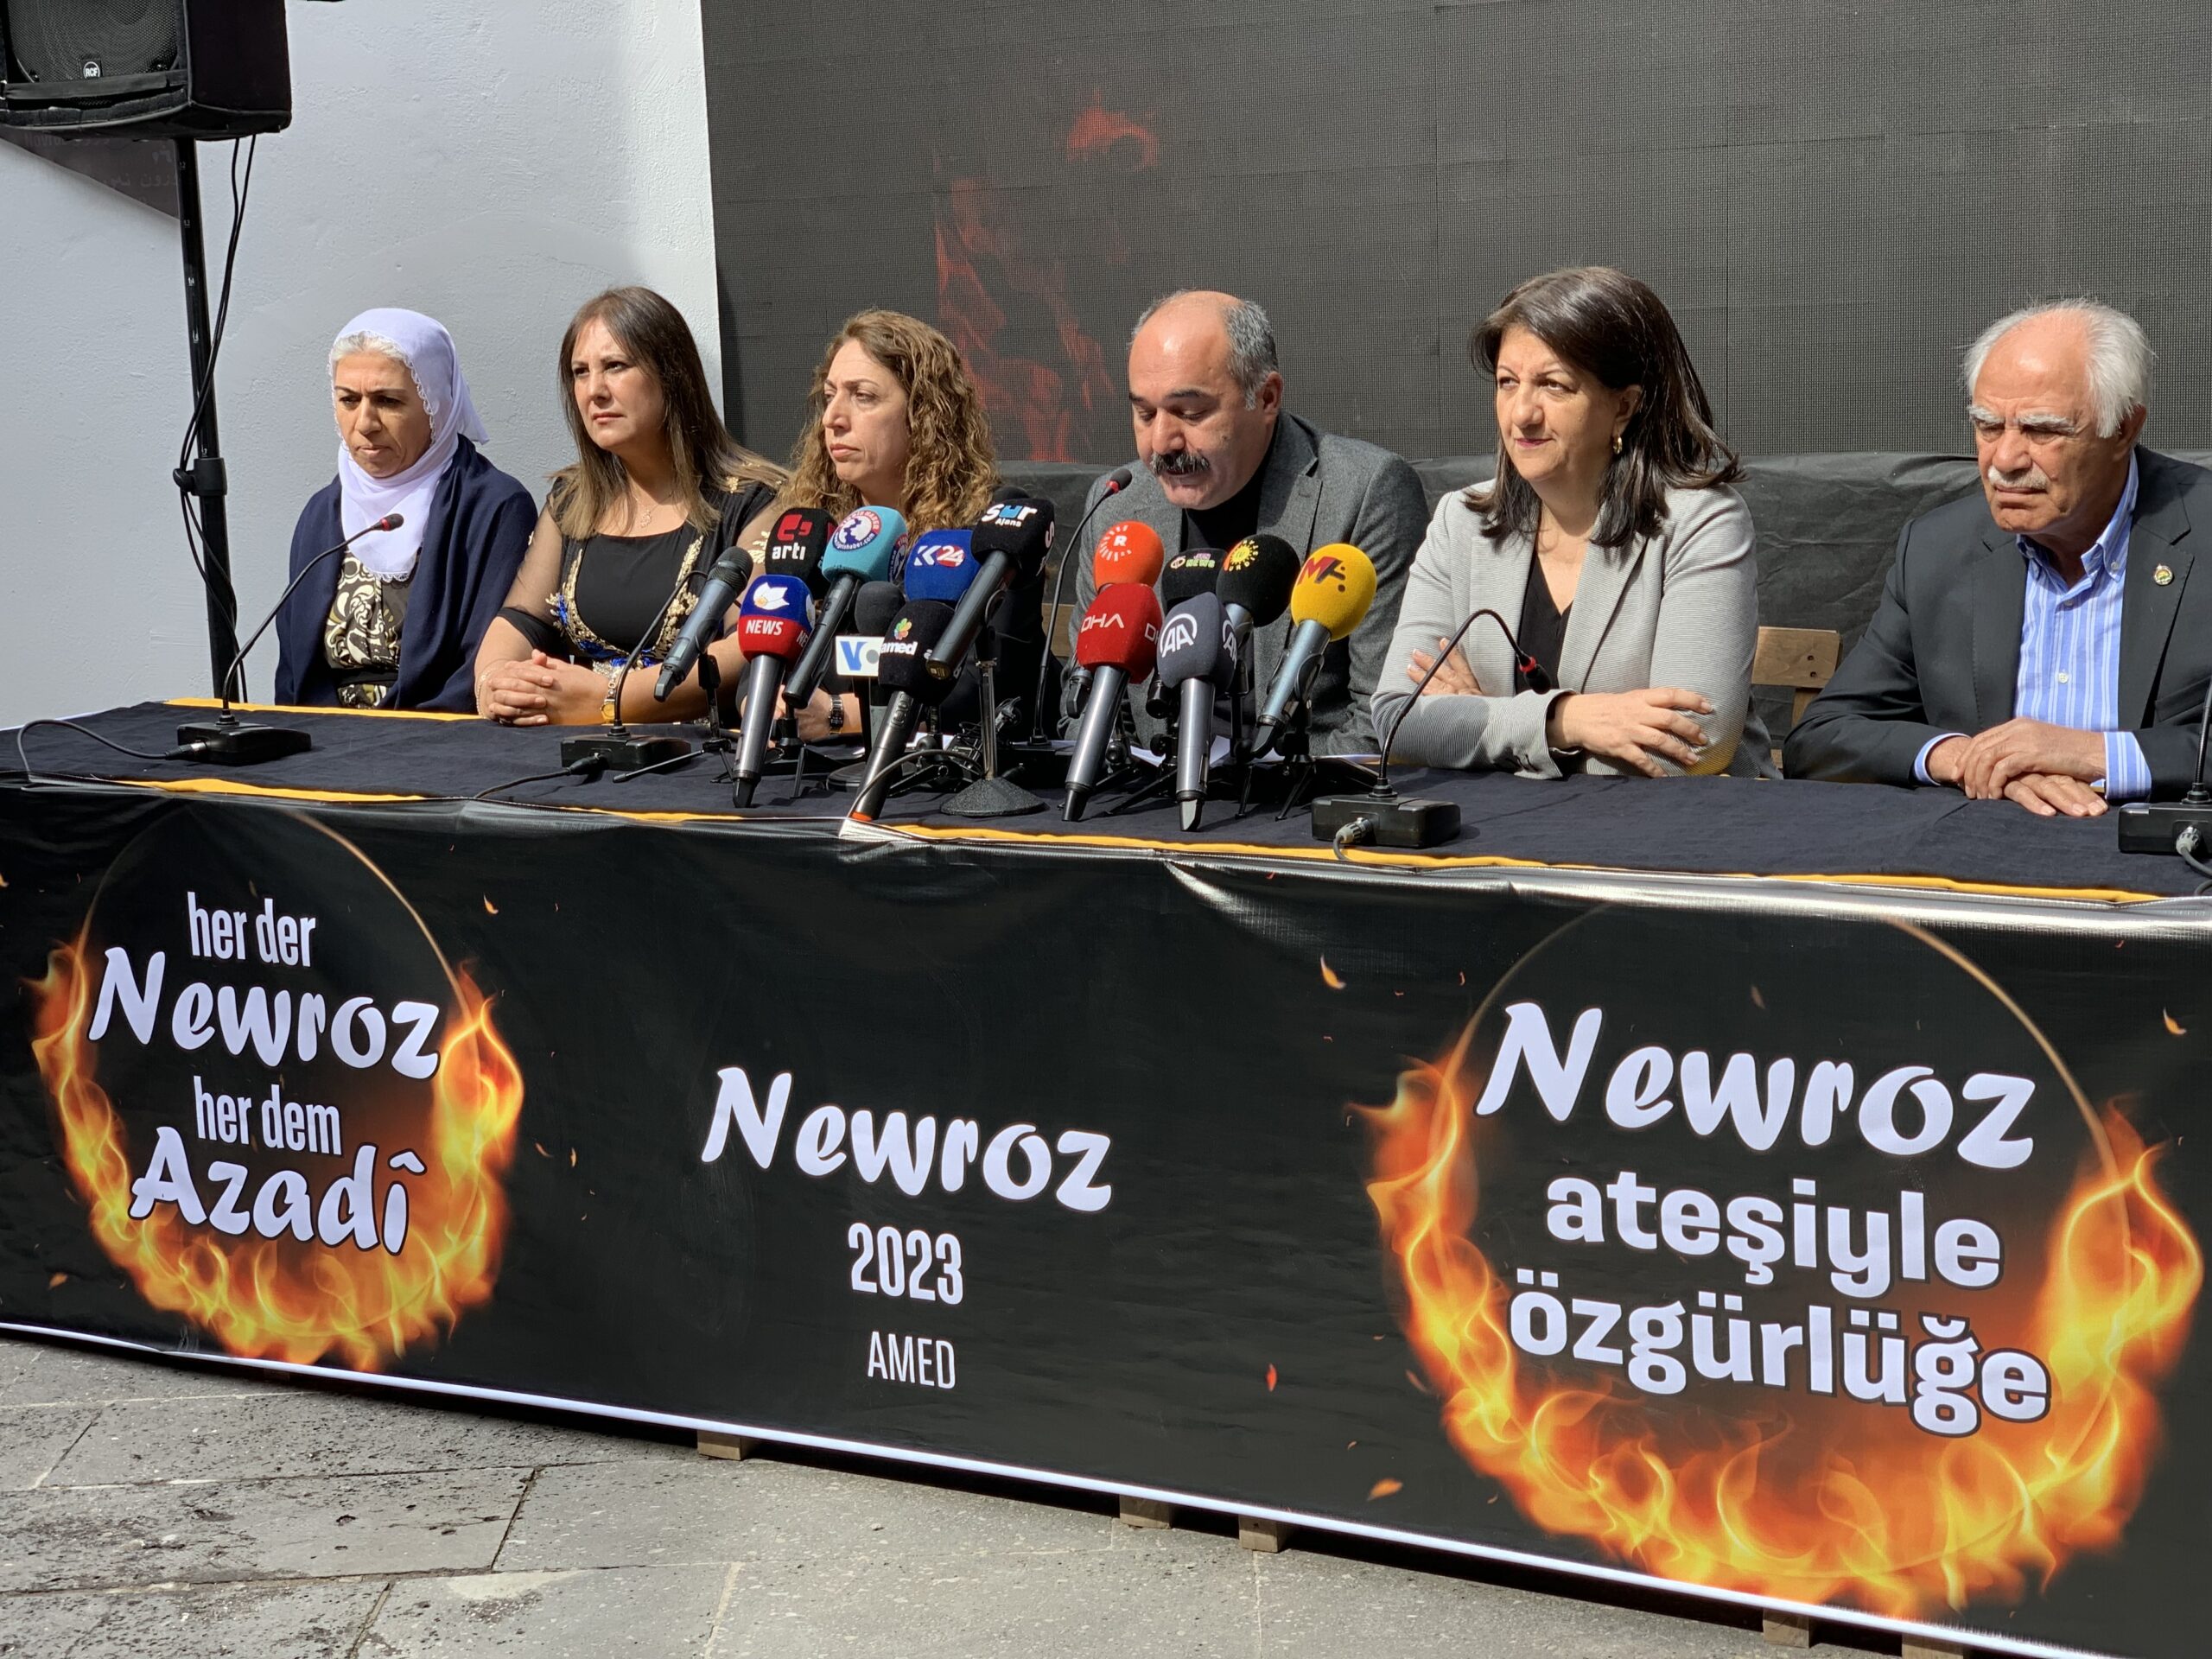 2023 Newroz deklarasyonu: Newroz ateşiyle özgürlüğe yürüyoruz